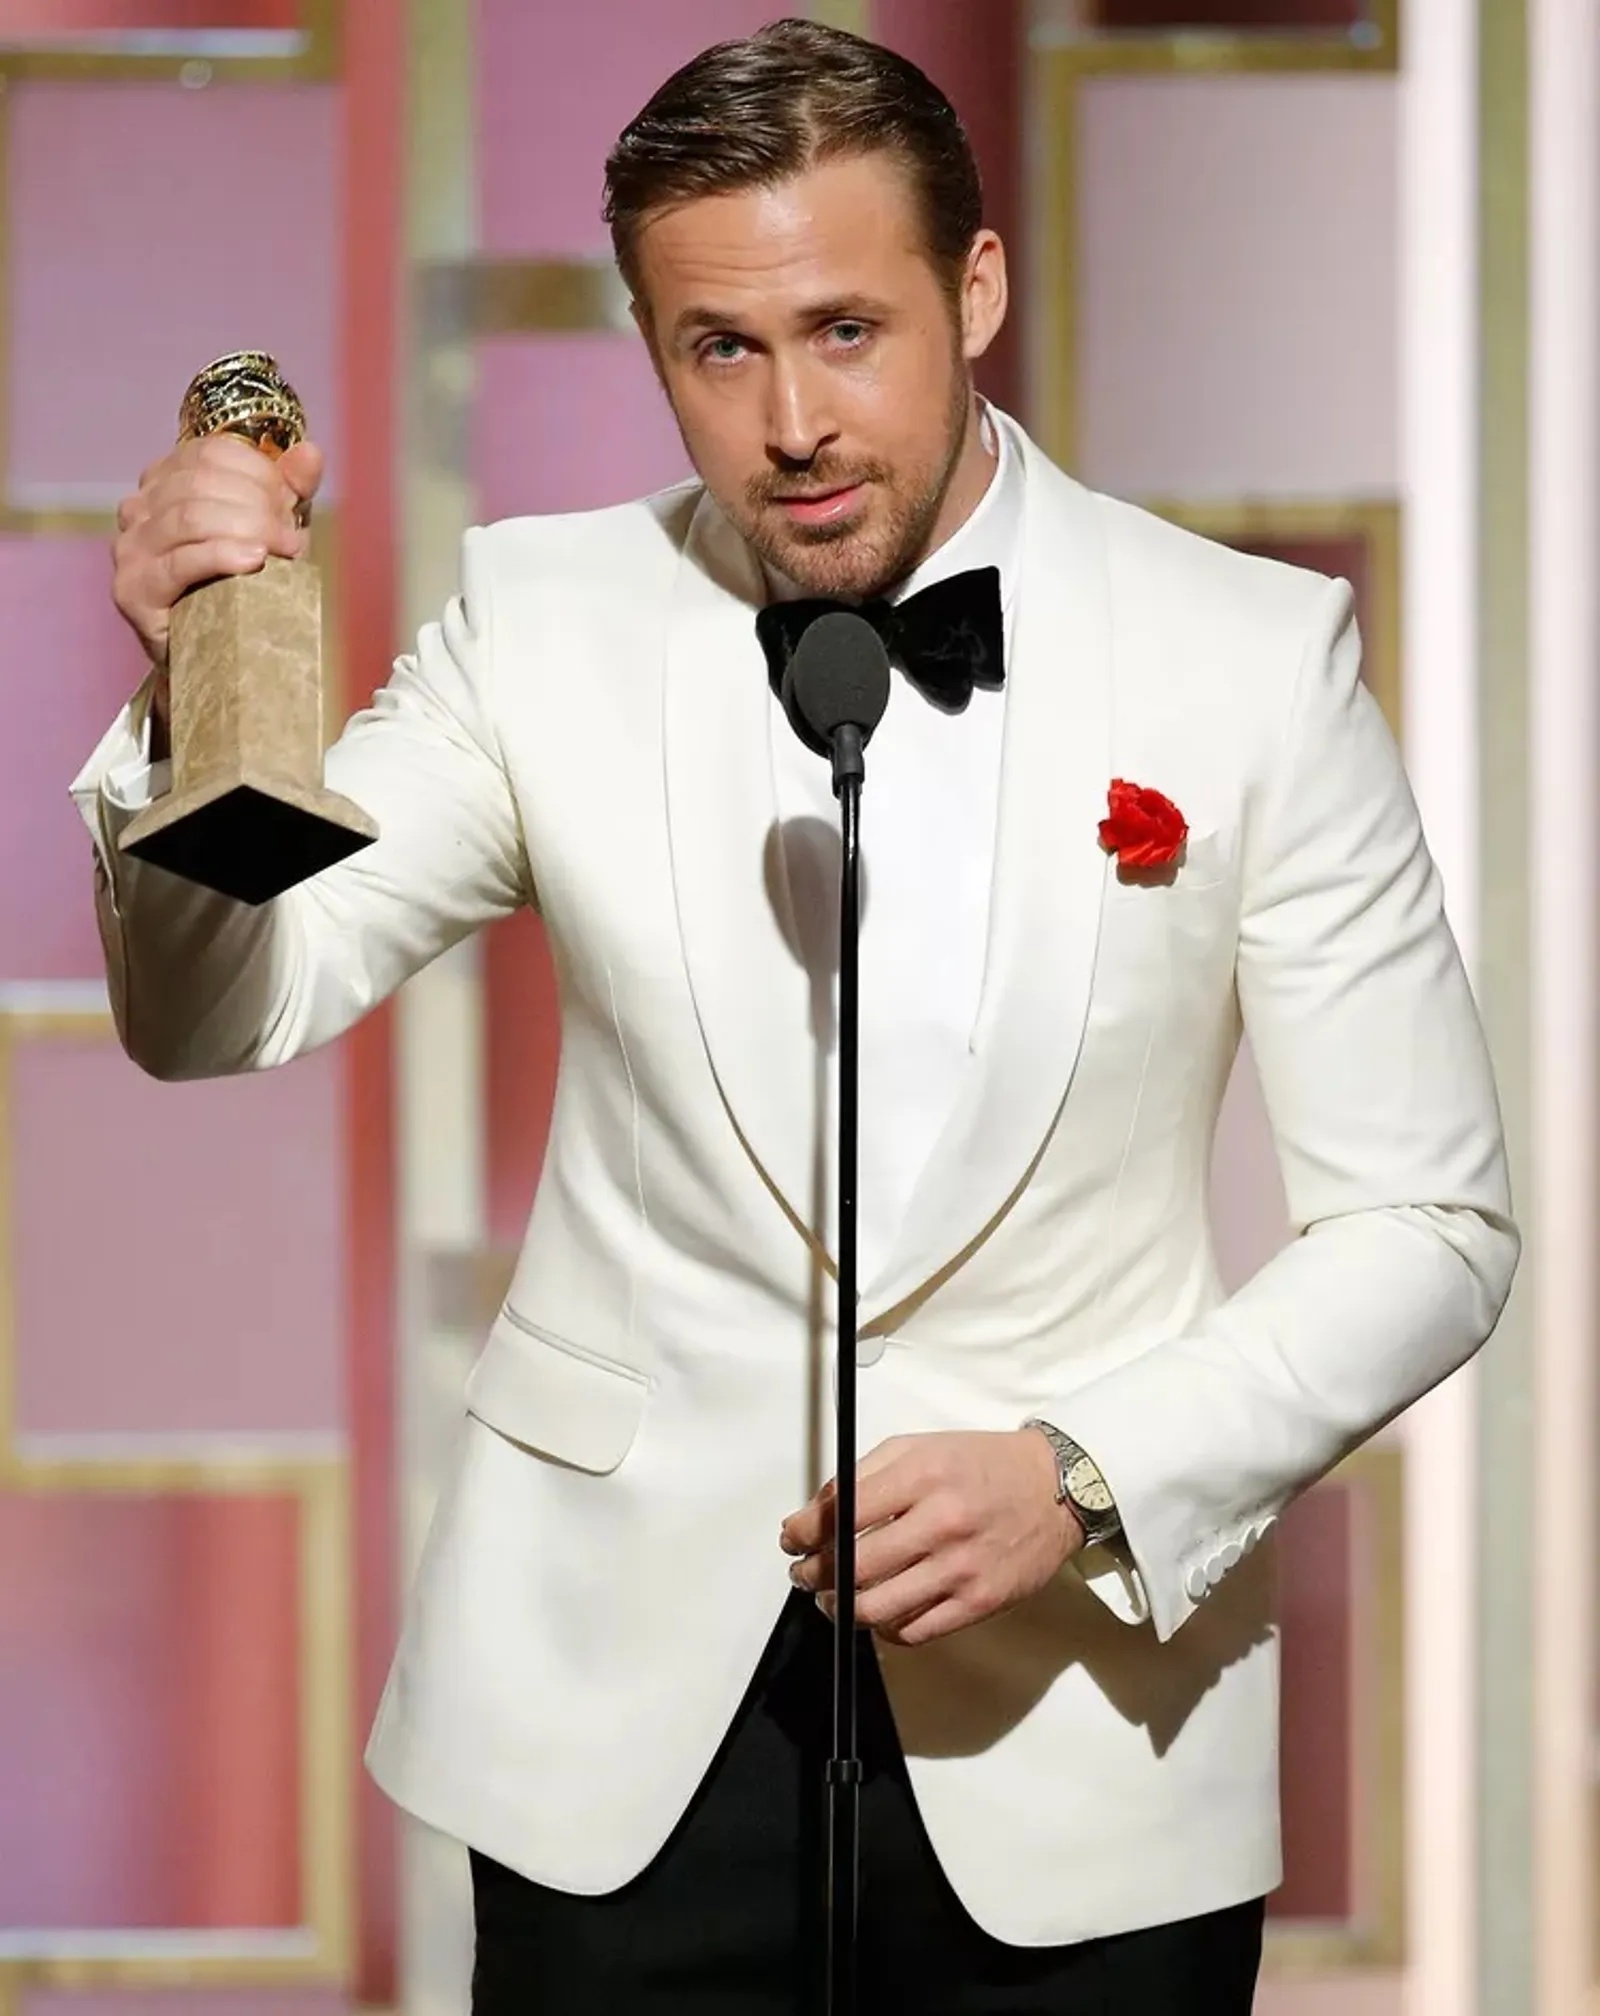 Rahasiakan Hubungan, Begini Perjalanan Cinta Ryan Gosling & Eva Mendes